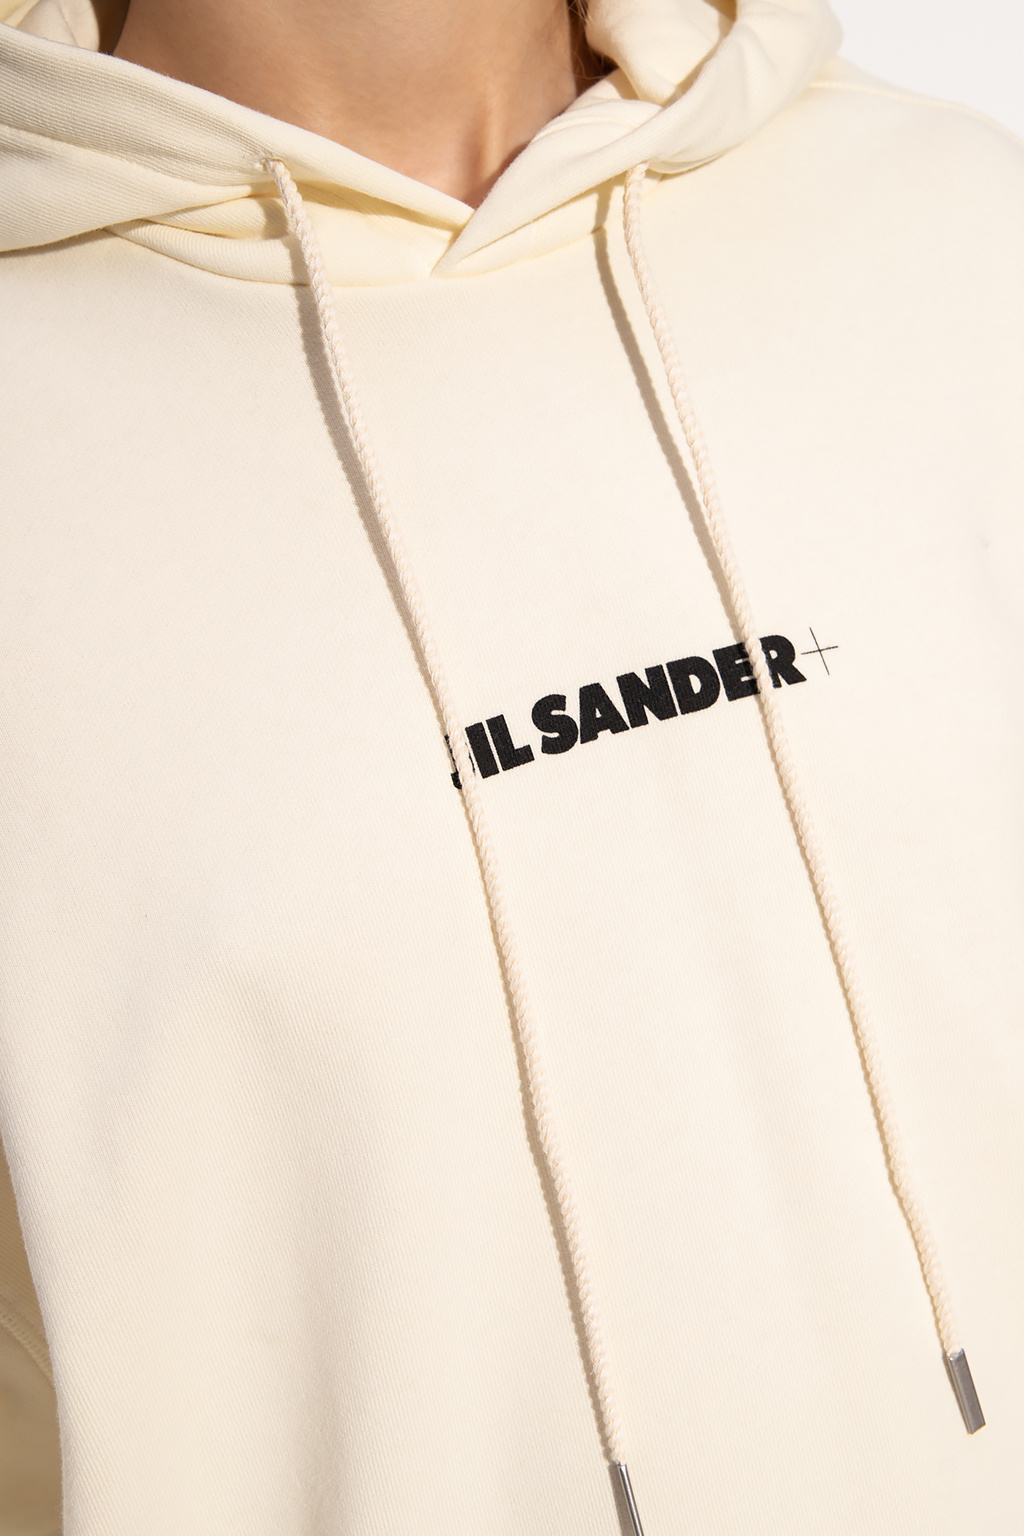 JIL SANDER+ Hoodie with logo